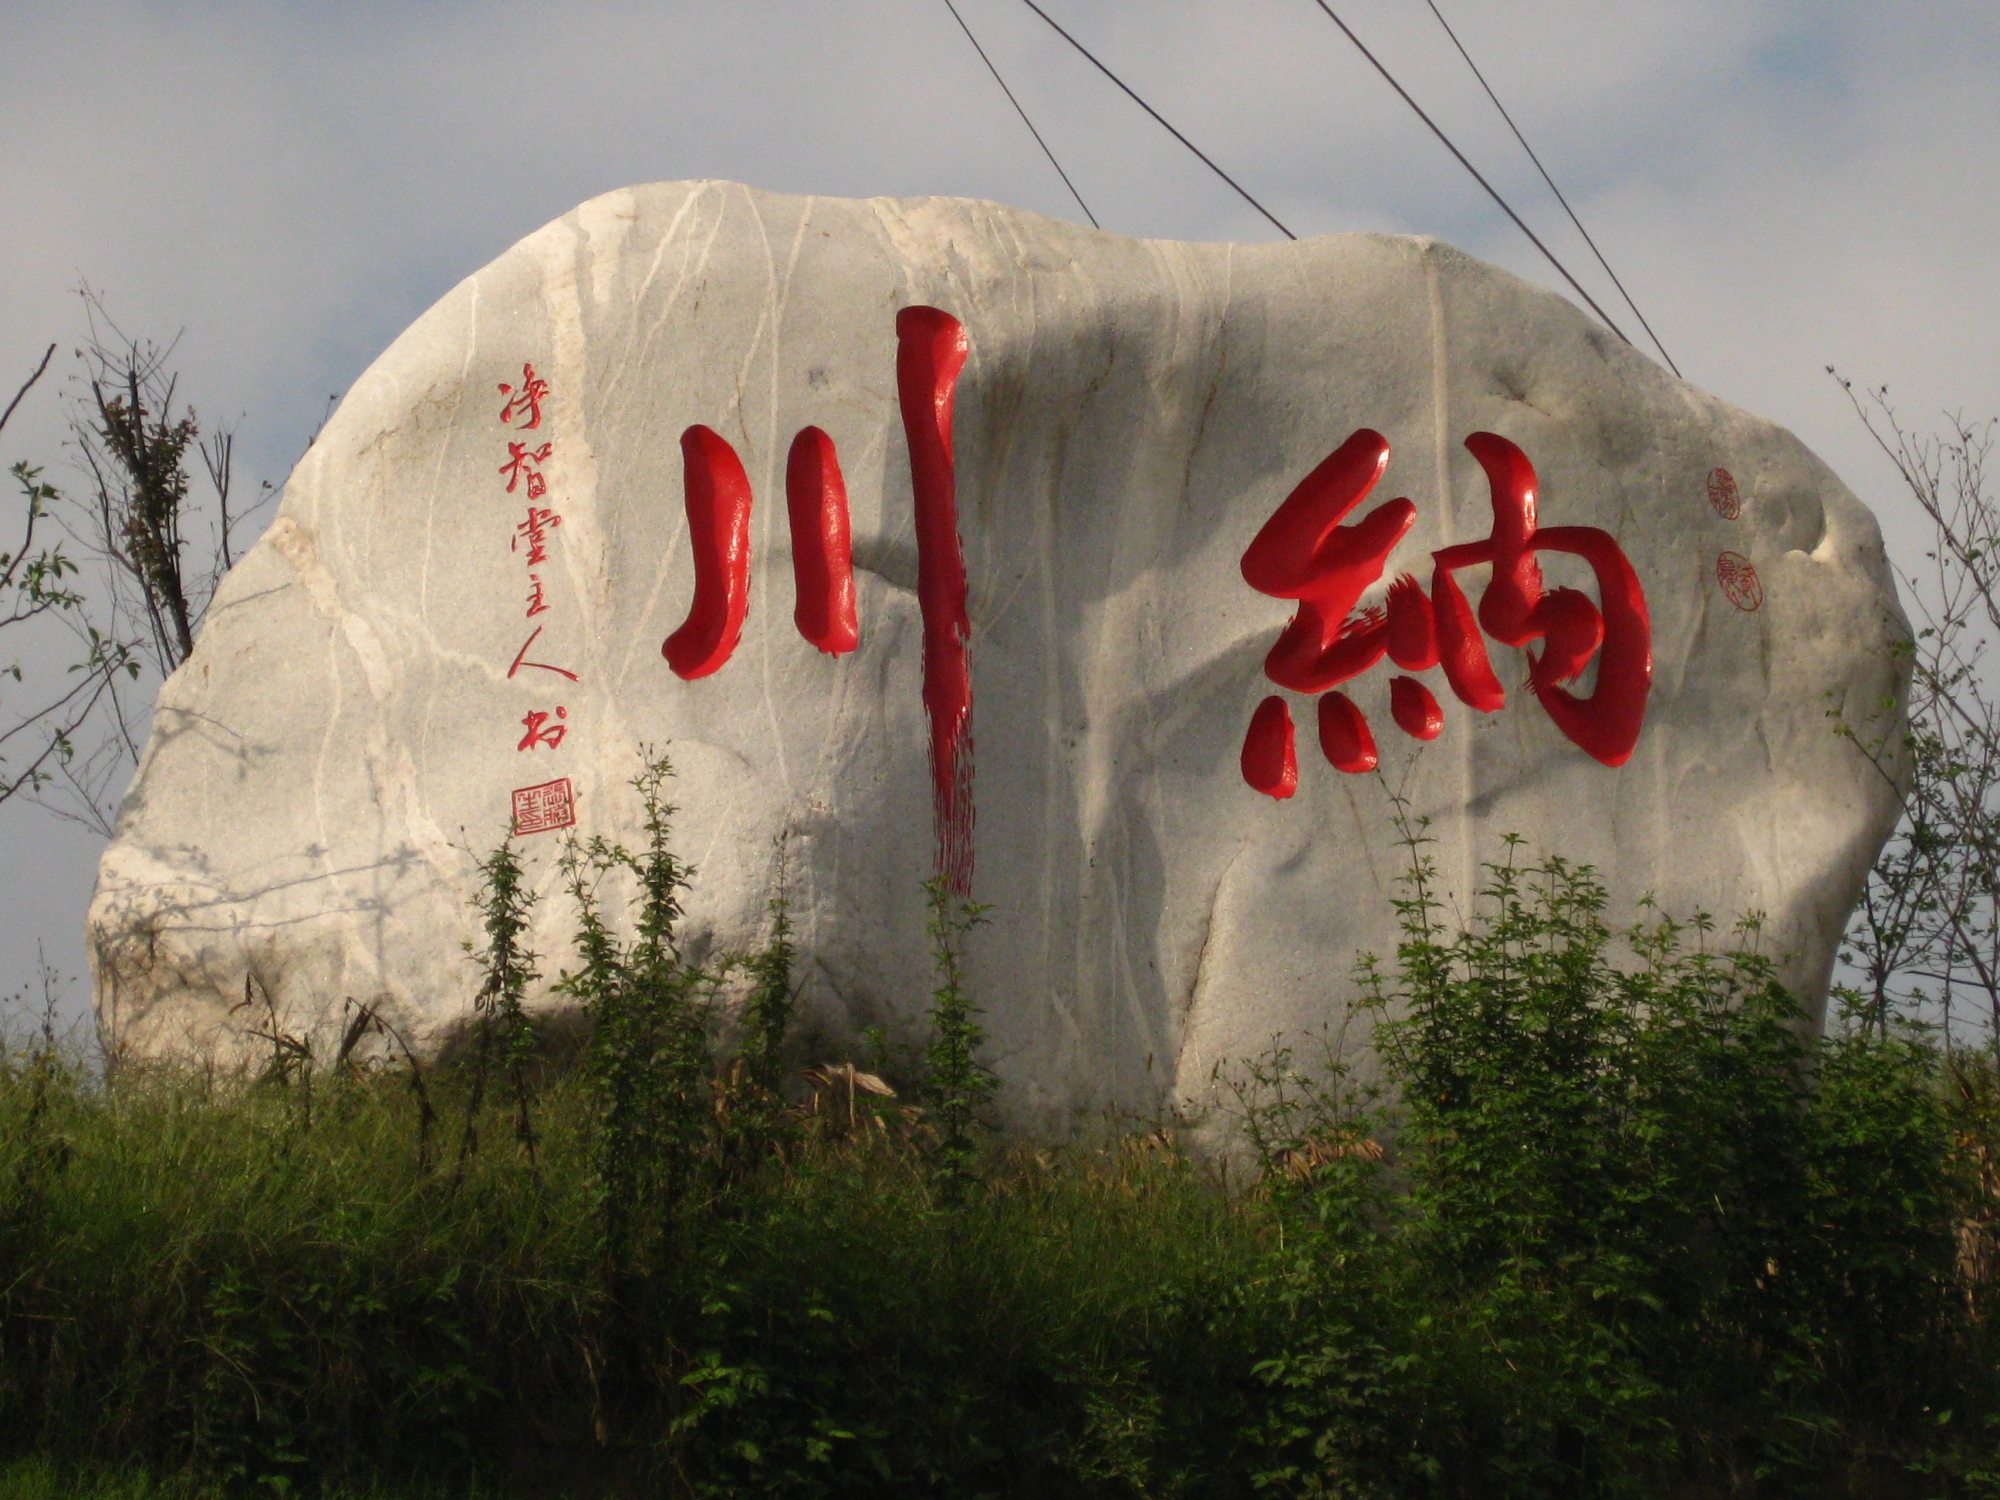 重庆纳川海隅机械有限公司 环境照片活动图片